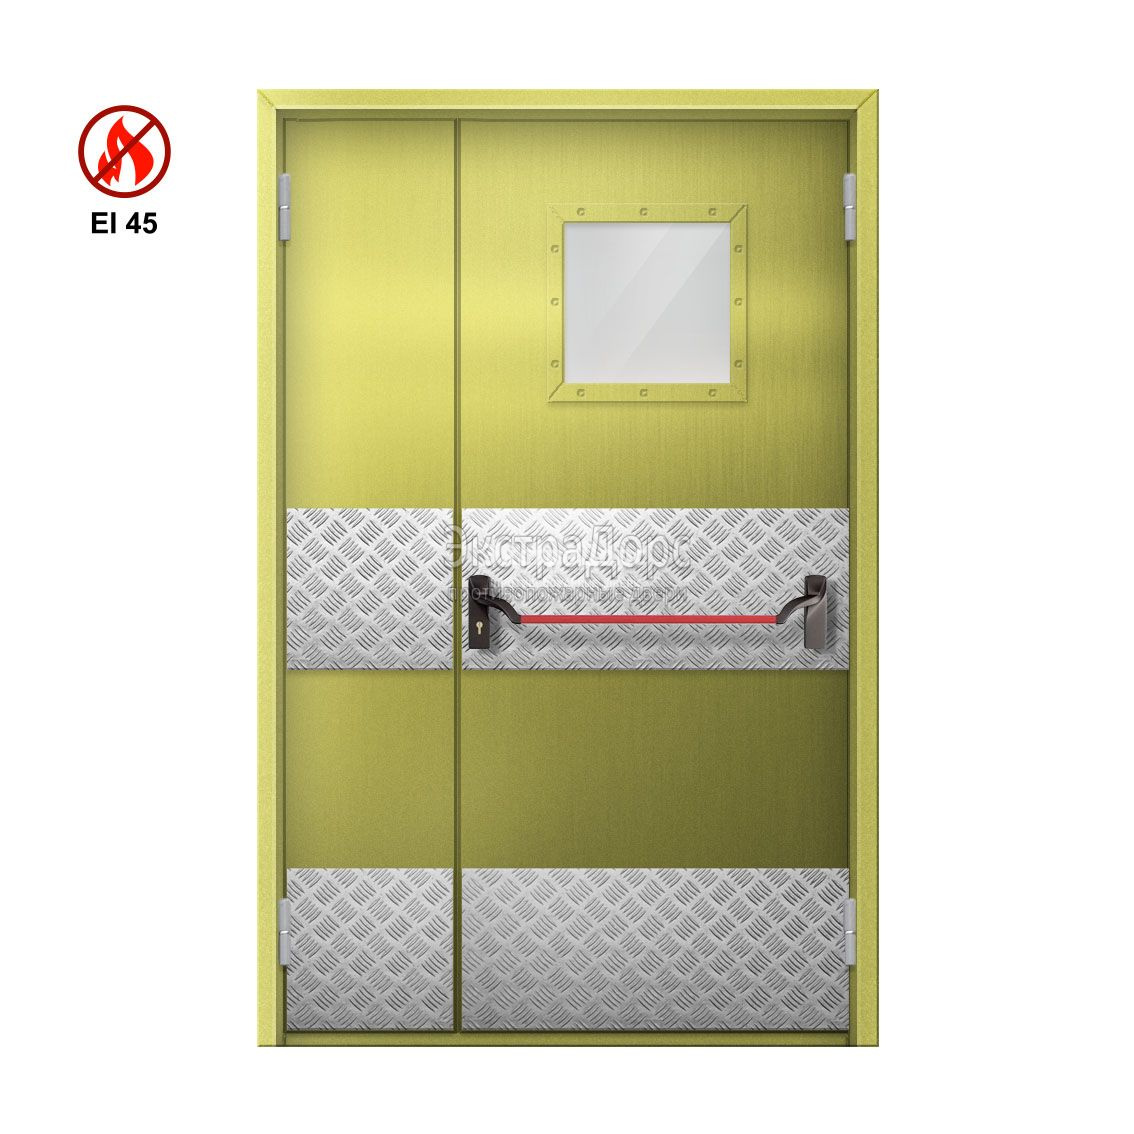 Противопожарная дверь EI 45 ДОП-EI45 ДП138 полуторная остекленная с антипаникой